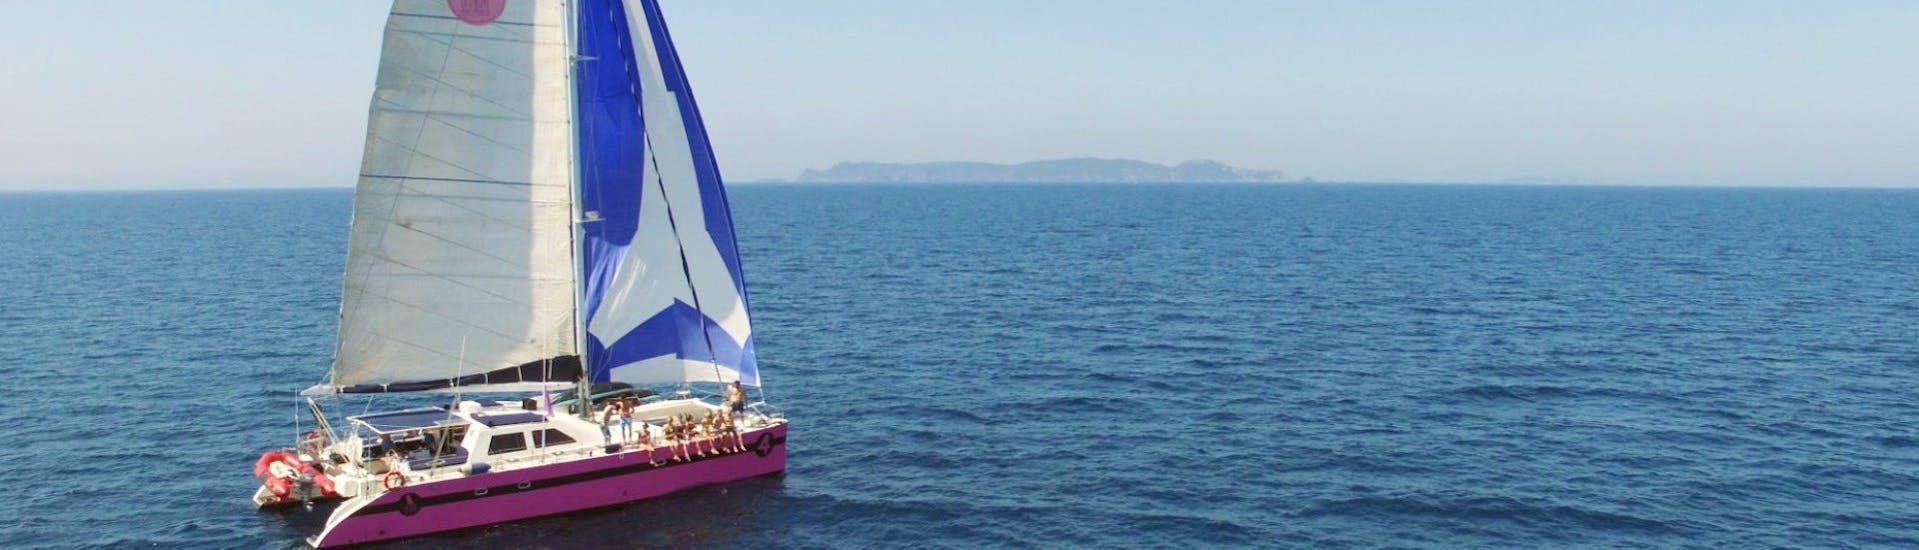 Une famille lors de la Balade en catamaran dans le golfe de Saint-Tropez avec Brunch avec Caseneuve Maxi Catamaran.